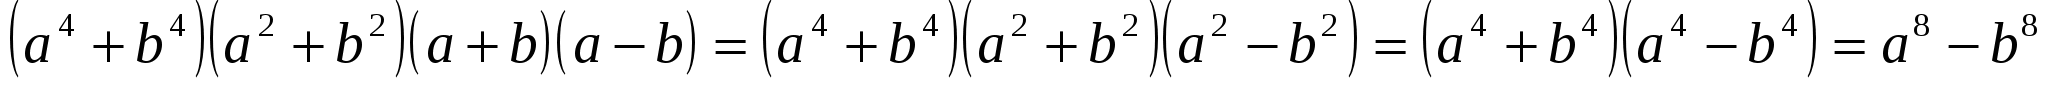 Алгебра “Бүтін өрнекті көпмүшеге түрлендіру” (7-сынып)